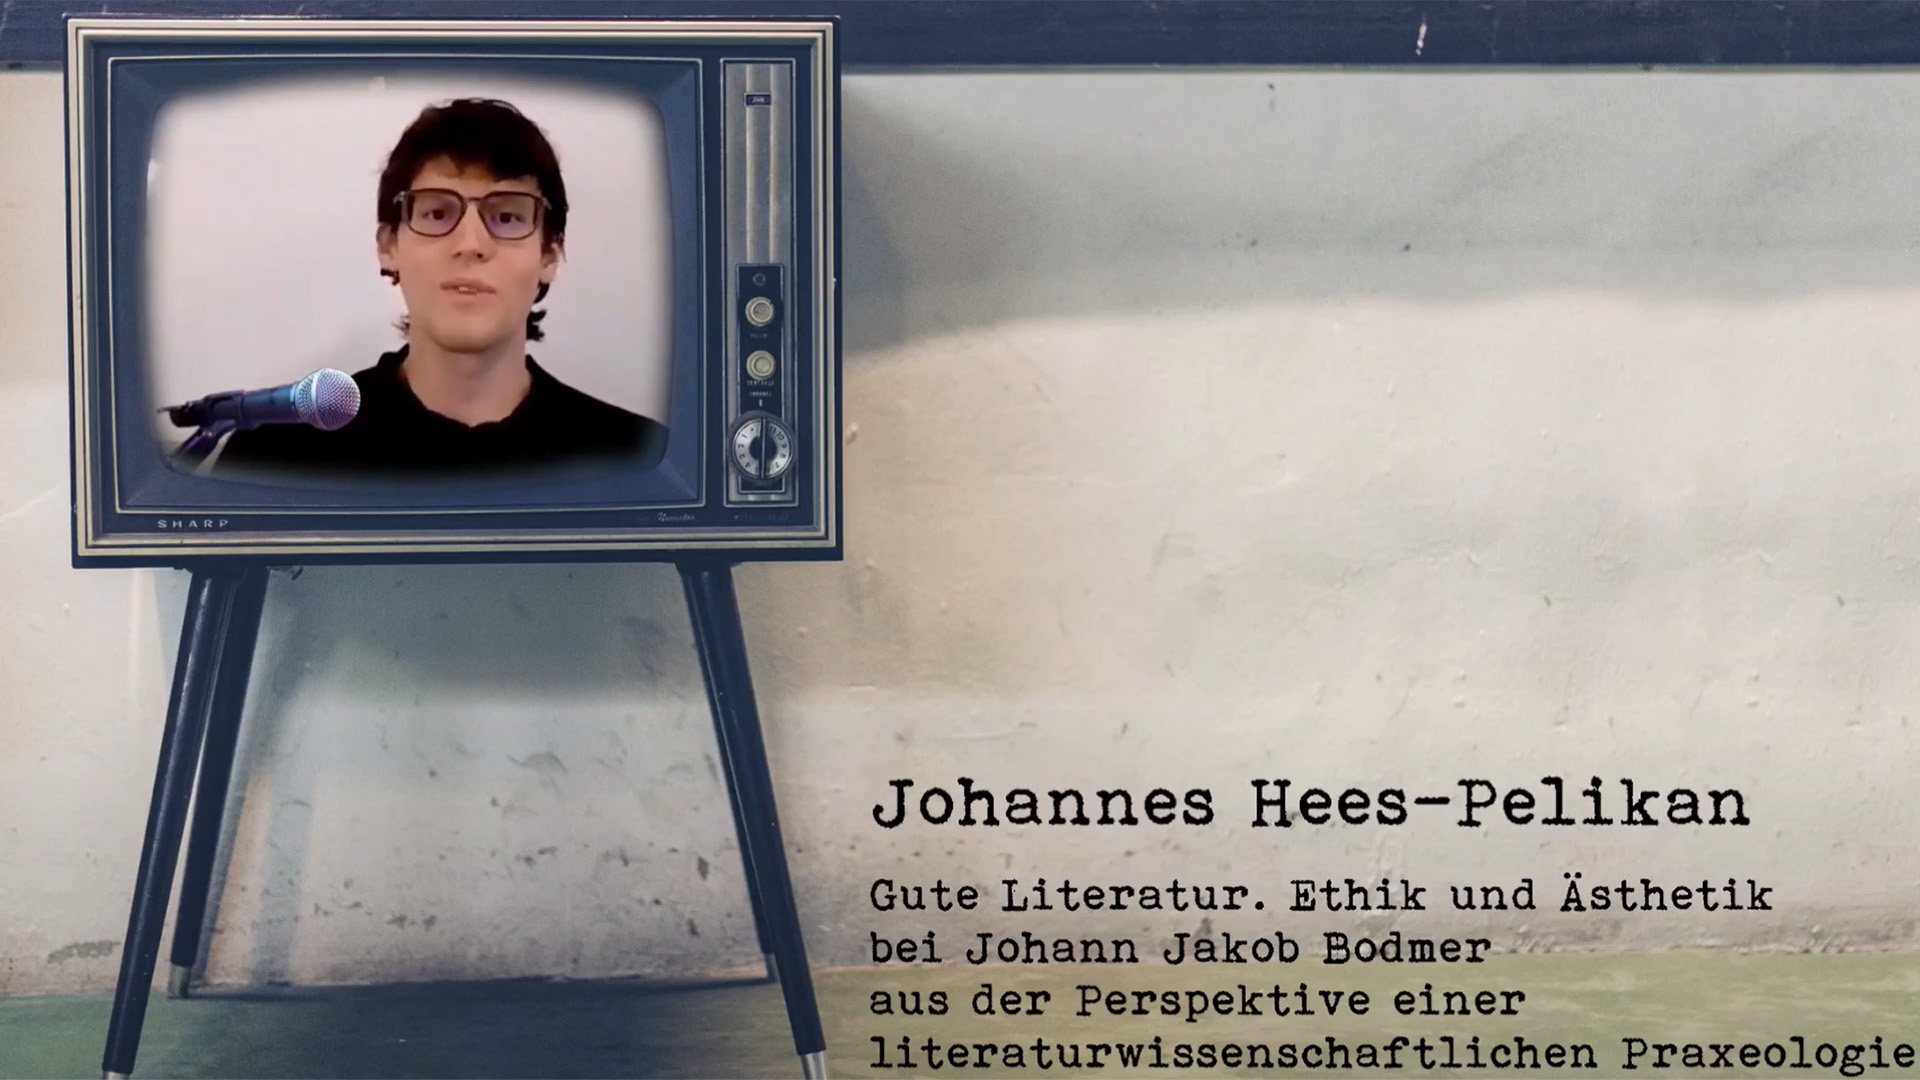 Das Bild zeigt einen Screenshot vom Youtube-Video mit Johannes Hees